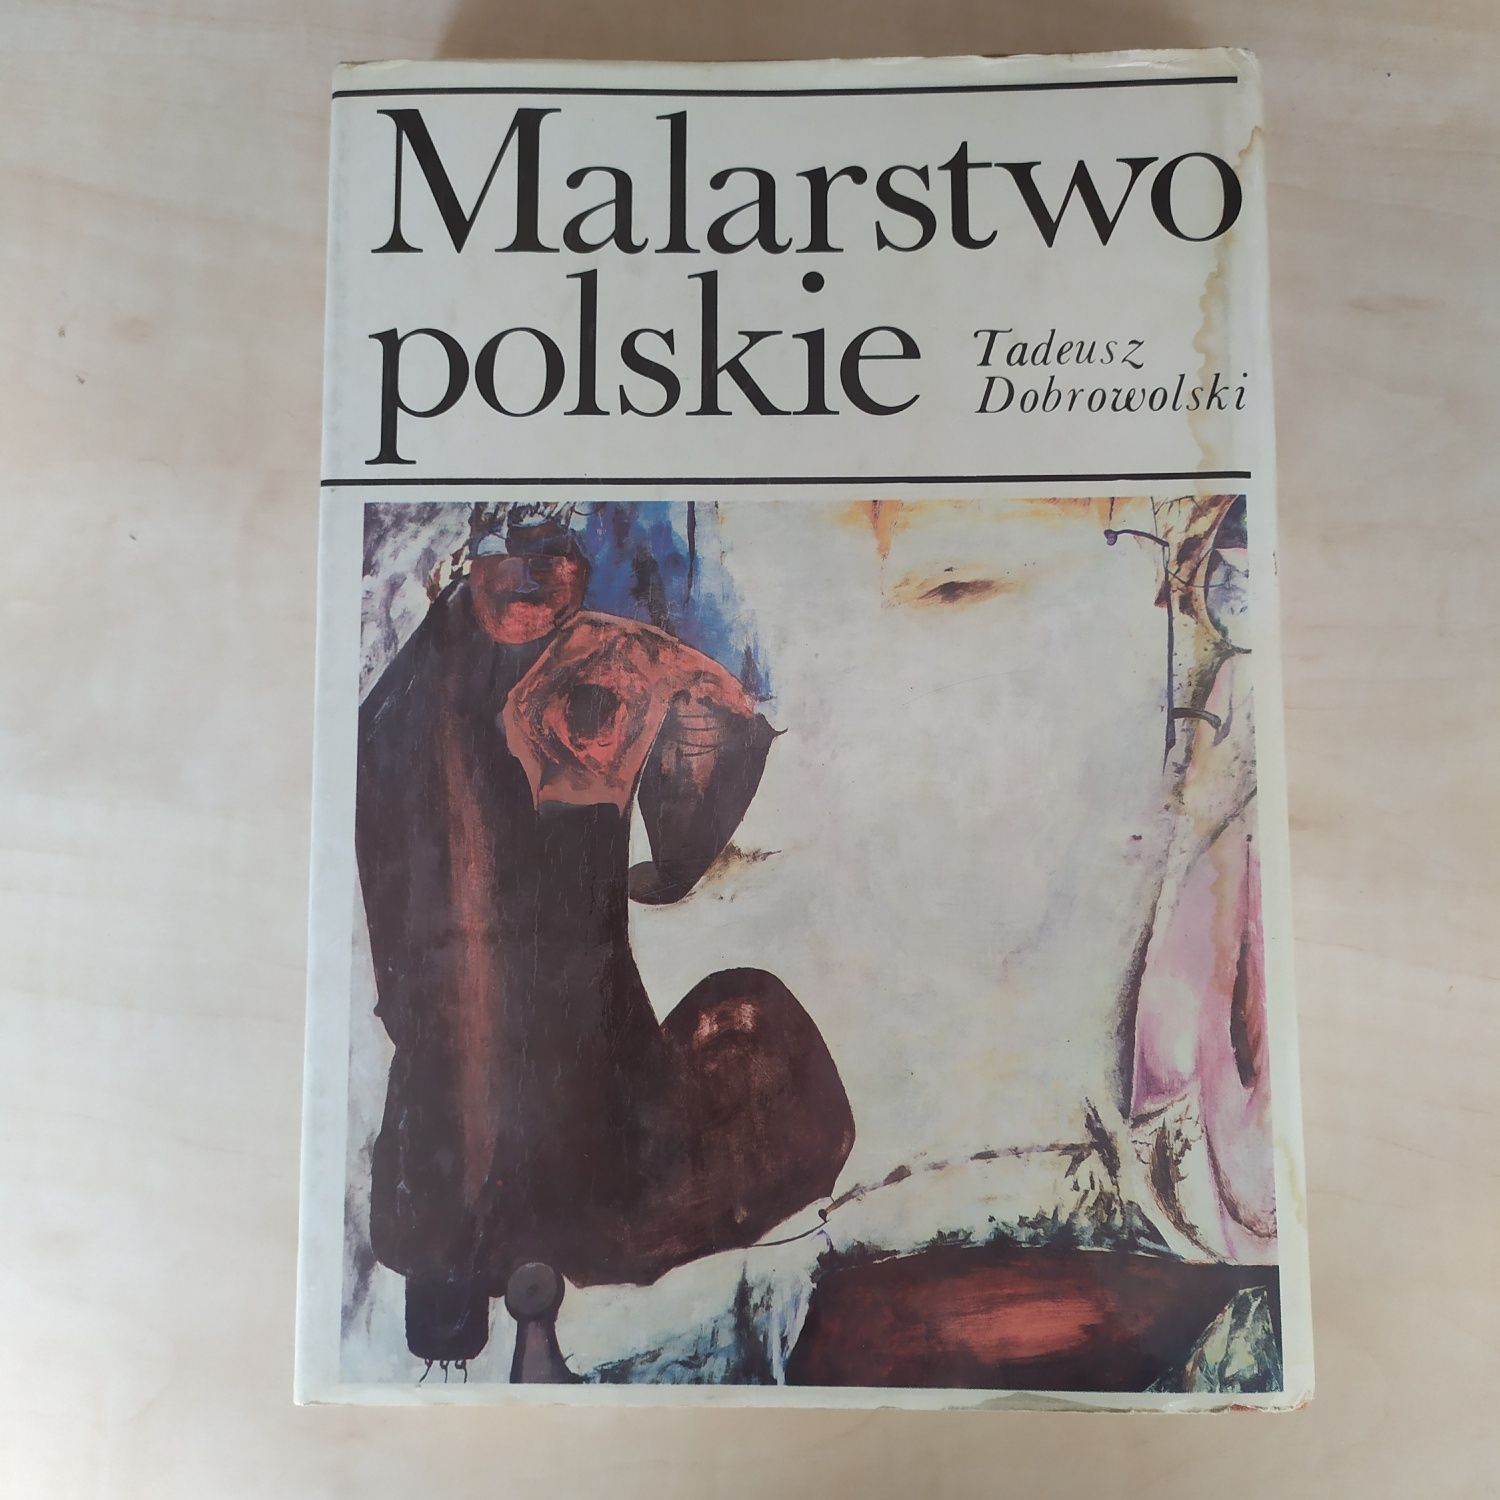 Malarstwo polskie Tadeusz Dobrowolski Ossolineum wydanie III 1989 rok